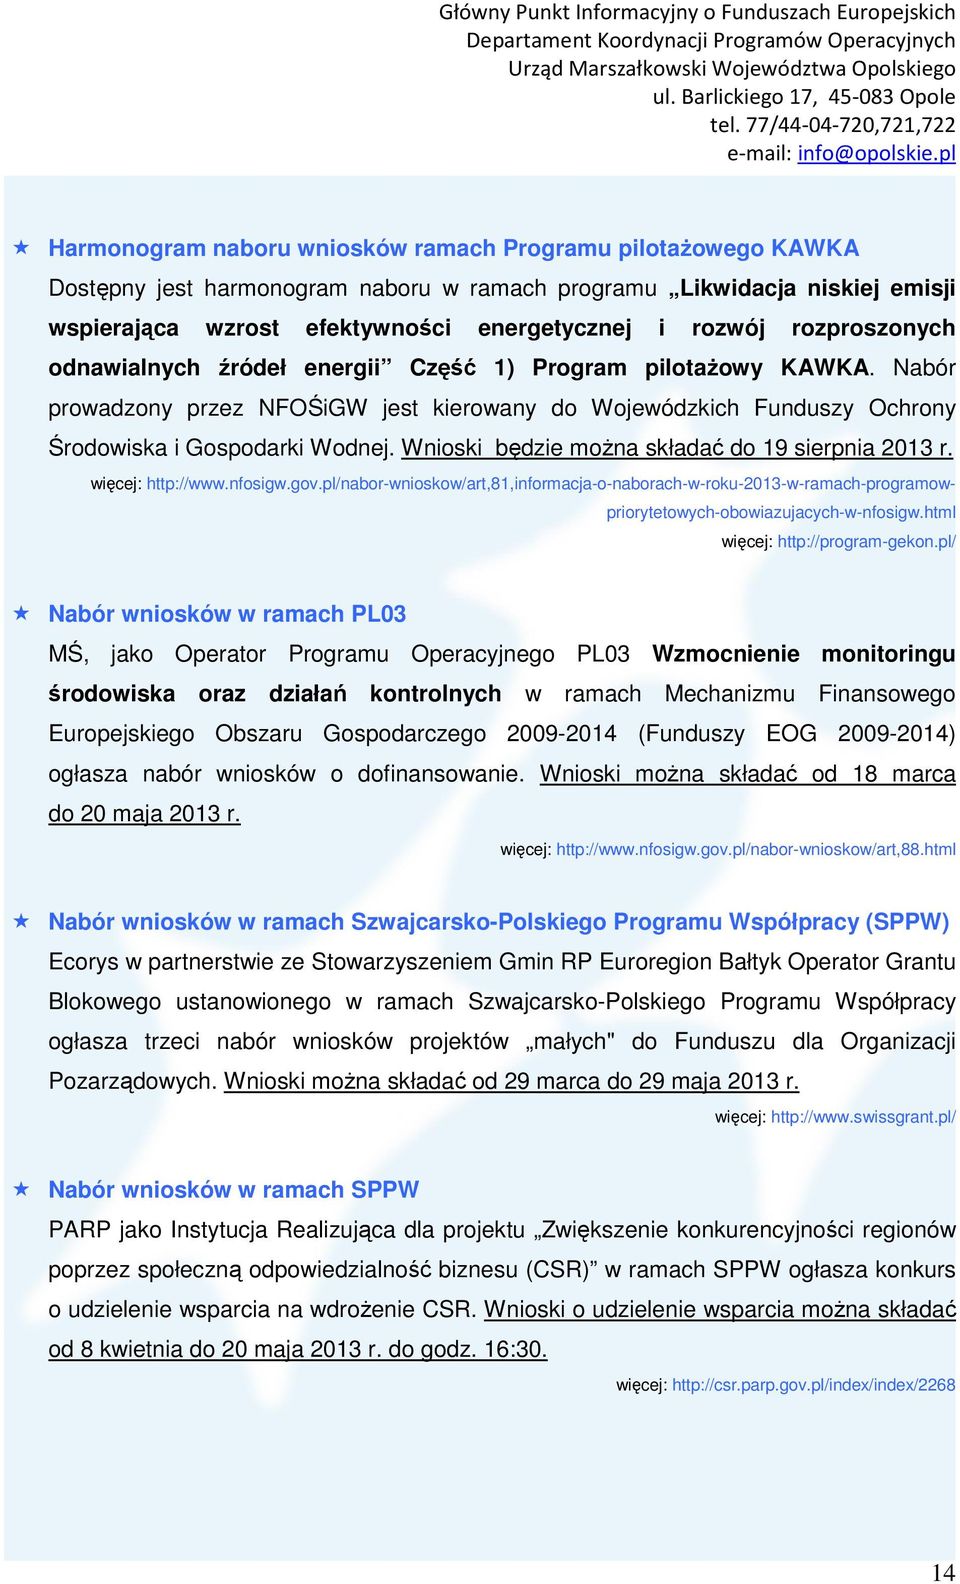 Wnioski będzie moŝna składać do 19 sierpnia 2013 r. więcej: http://www.nfosigw.gov.pl/nabor-wnioskow/art,81,informacja-o-naborach-w-roku-2013-w-ramach-programowpriorytetowych-obowiazujacych-w-nfosigw.